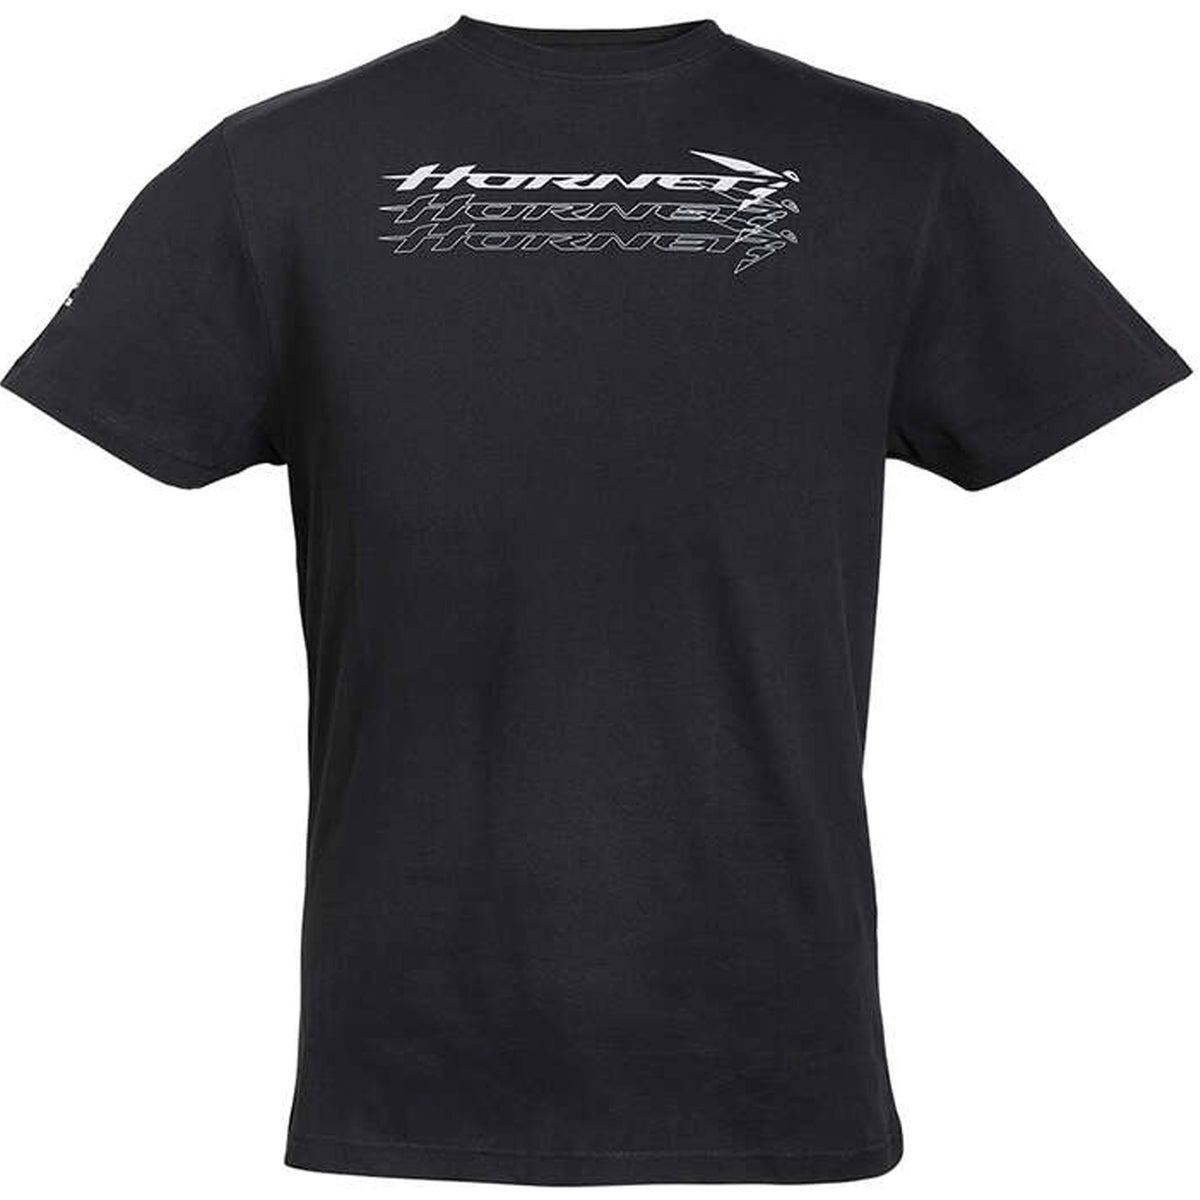 Honda Hornet T-shirt